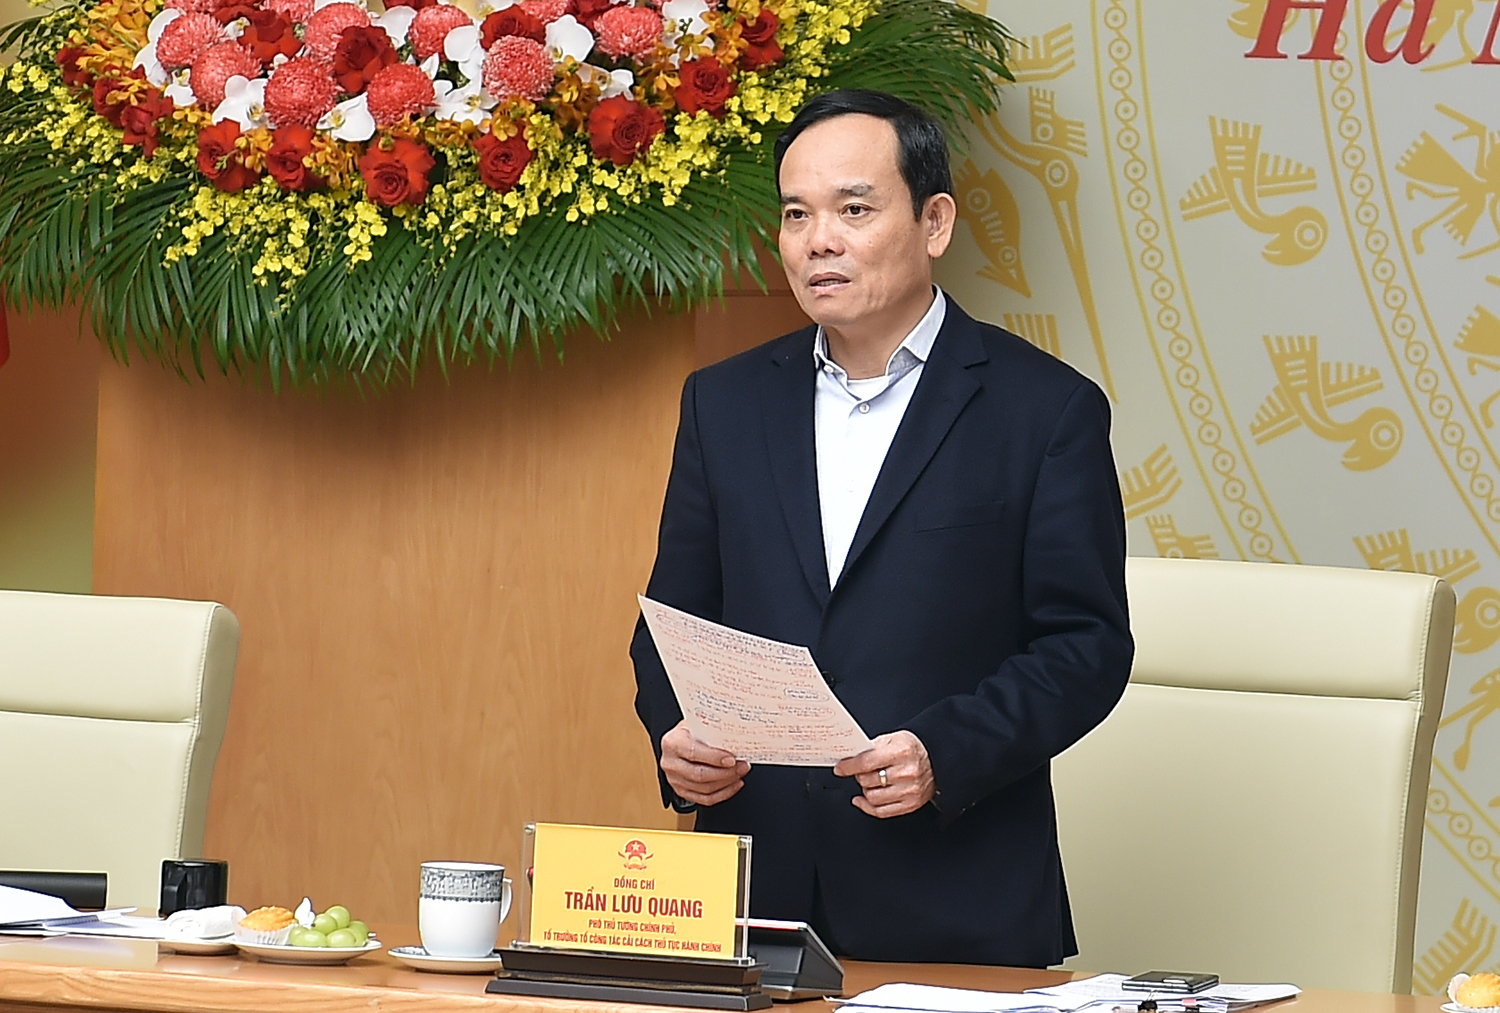 Phó Thủ tướng Trần Lưu Quang yêu cầu các bộ, ngành, địa phương không chỉ dừng lại ở việc ghi nhận mà phải xử lý vướng mắc về TTHC một cách hết sức có trách nhiệm - Ảnh: VGP/Hải Minh